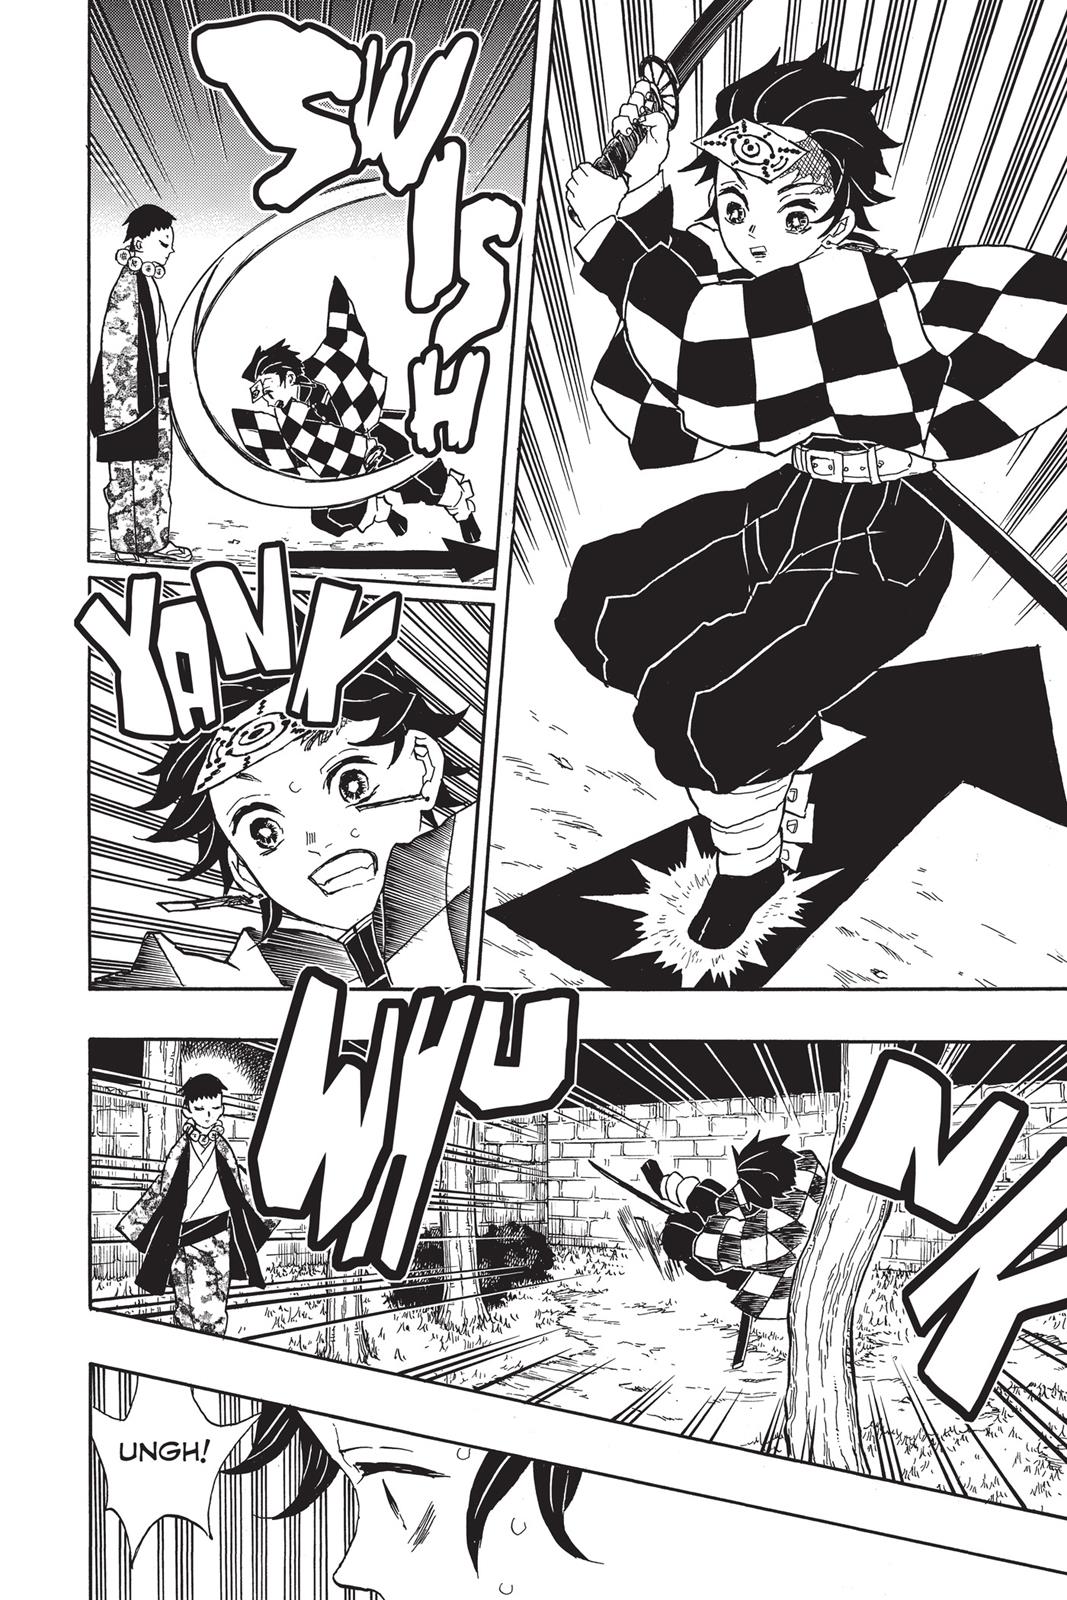 Demon Slayer Manga Manga Chapter - 17 - image 13